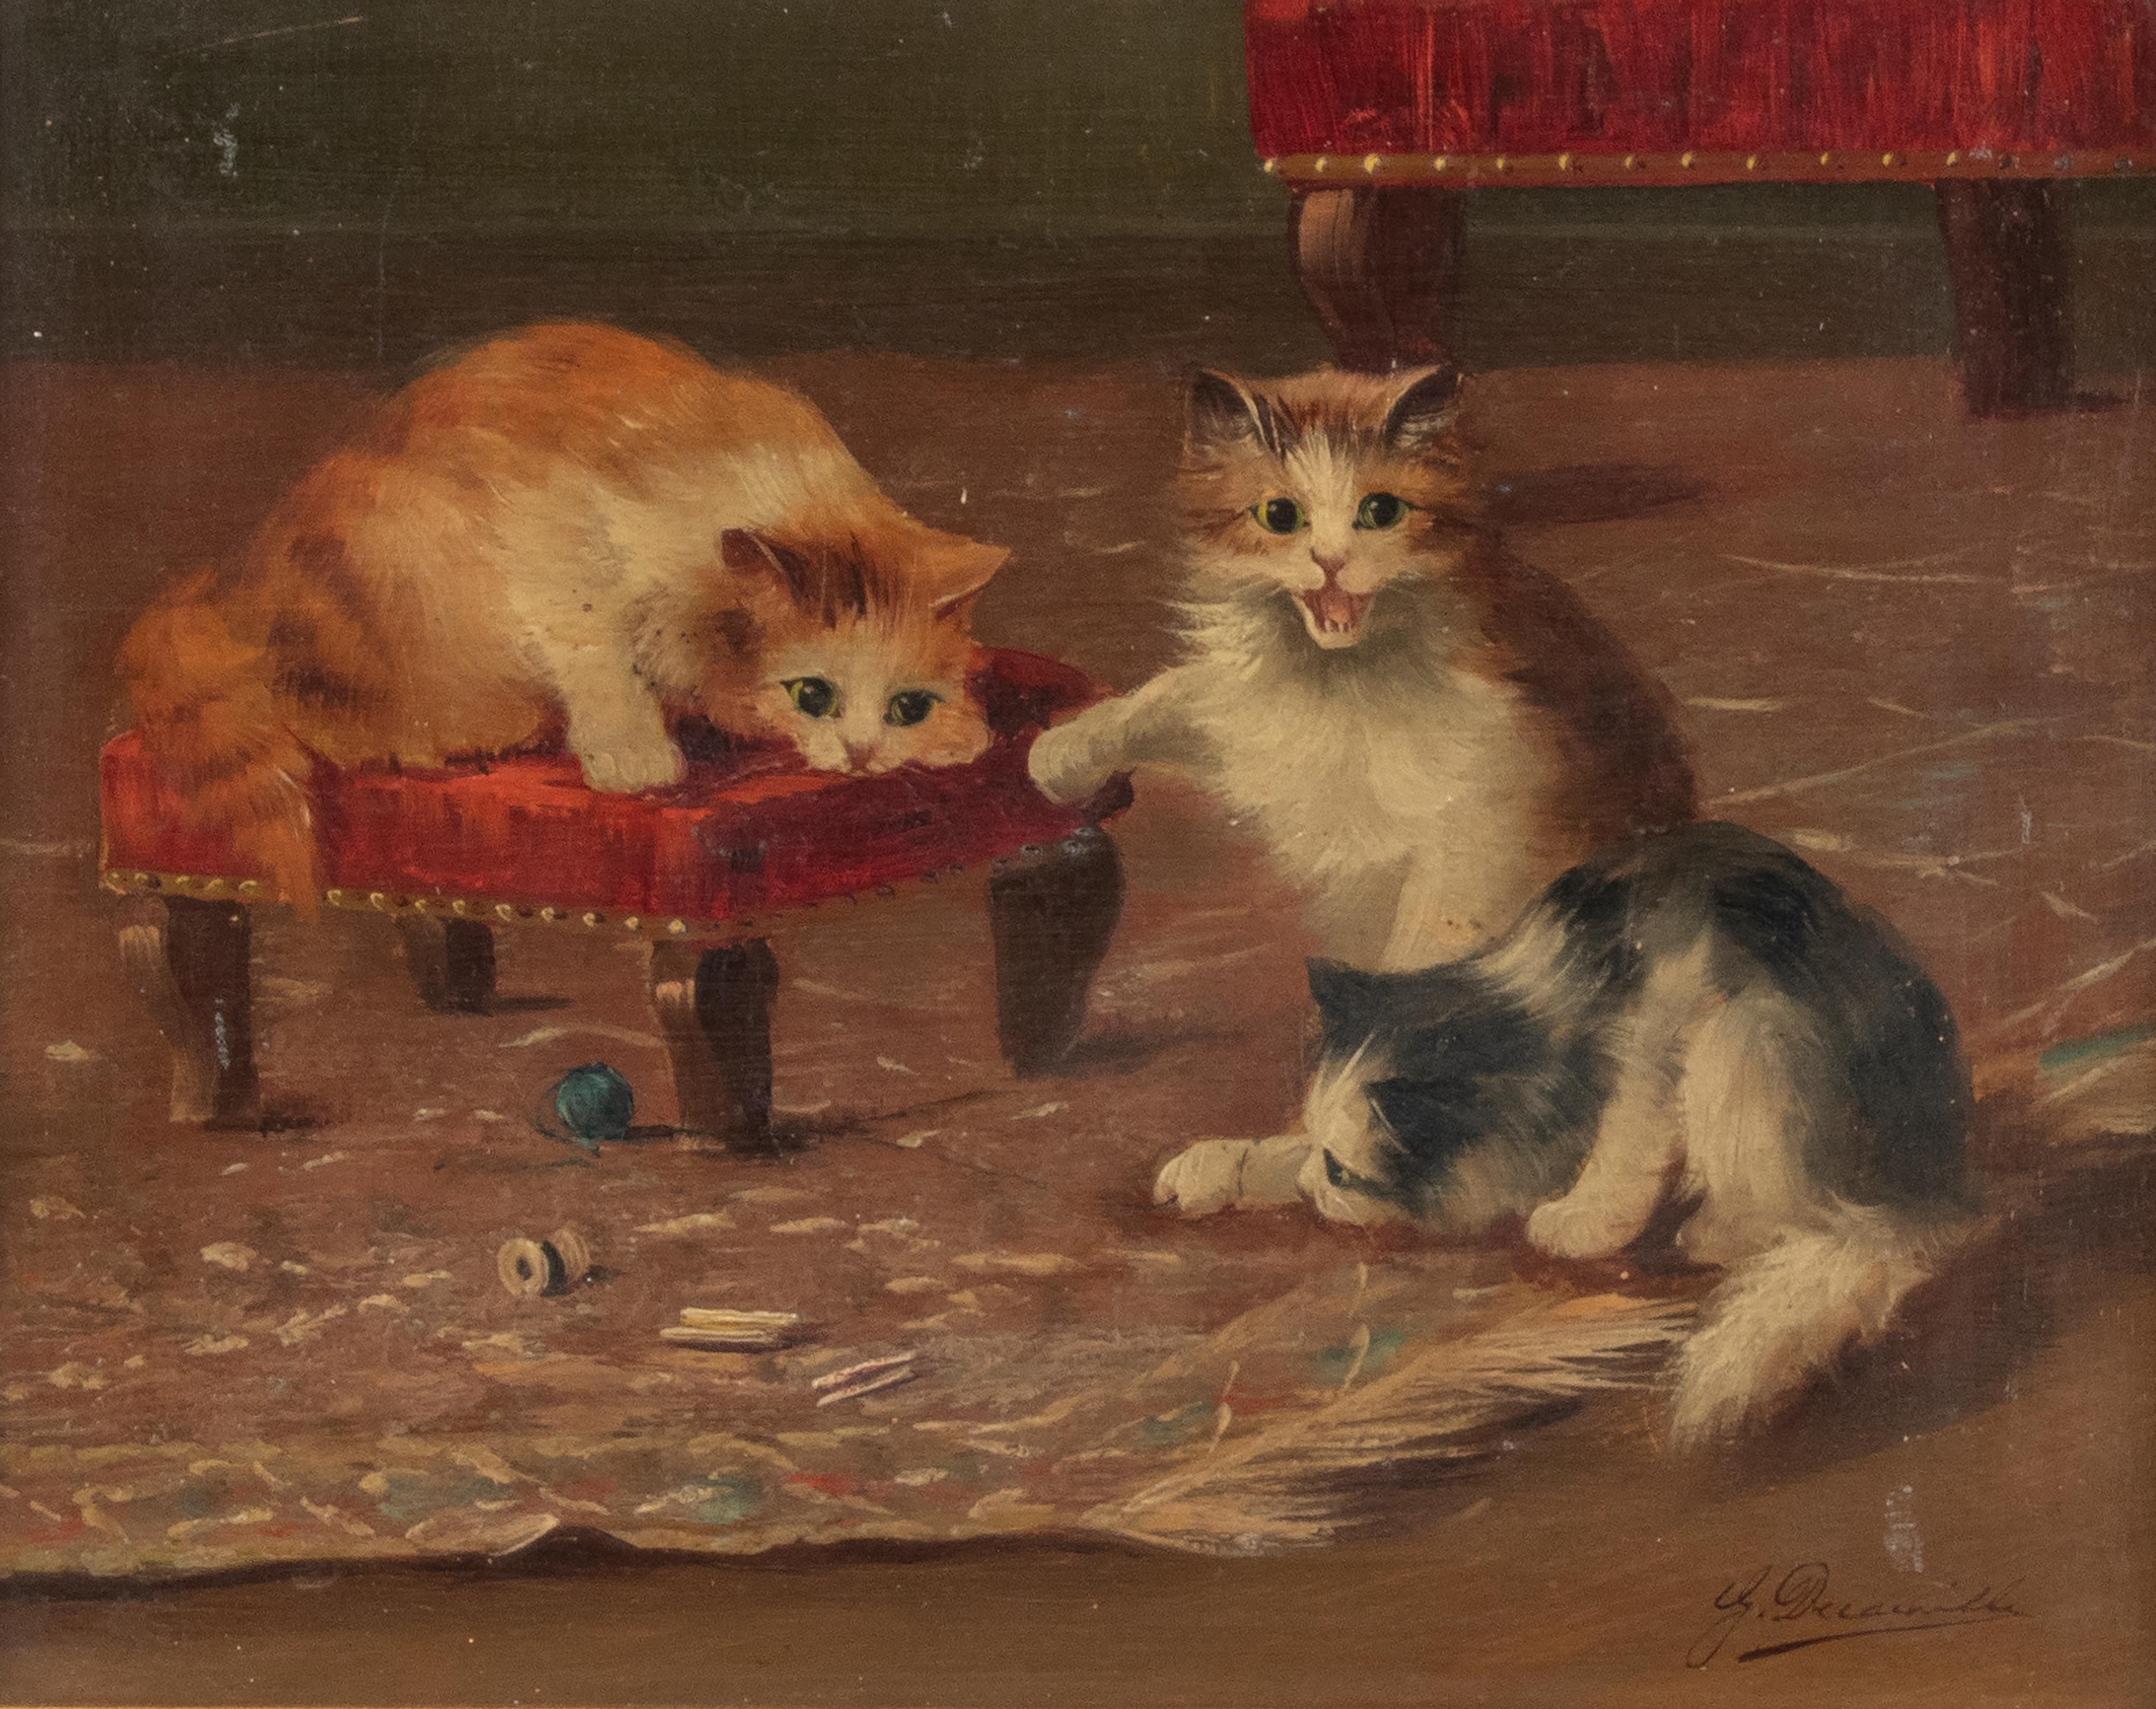 Niedliches Bild von spielenden Katzen. Das Gemälde stammt aus der Zeit um 1910-1920 und ist vermutlich französisch. Das Gemälde ist unten rechts signiert, aber die Signatur ist nicht deutlich lesbar. Das Gemälde befindet sich in gutem Zustand und